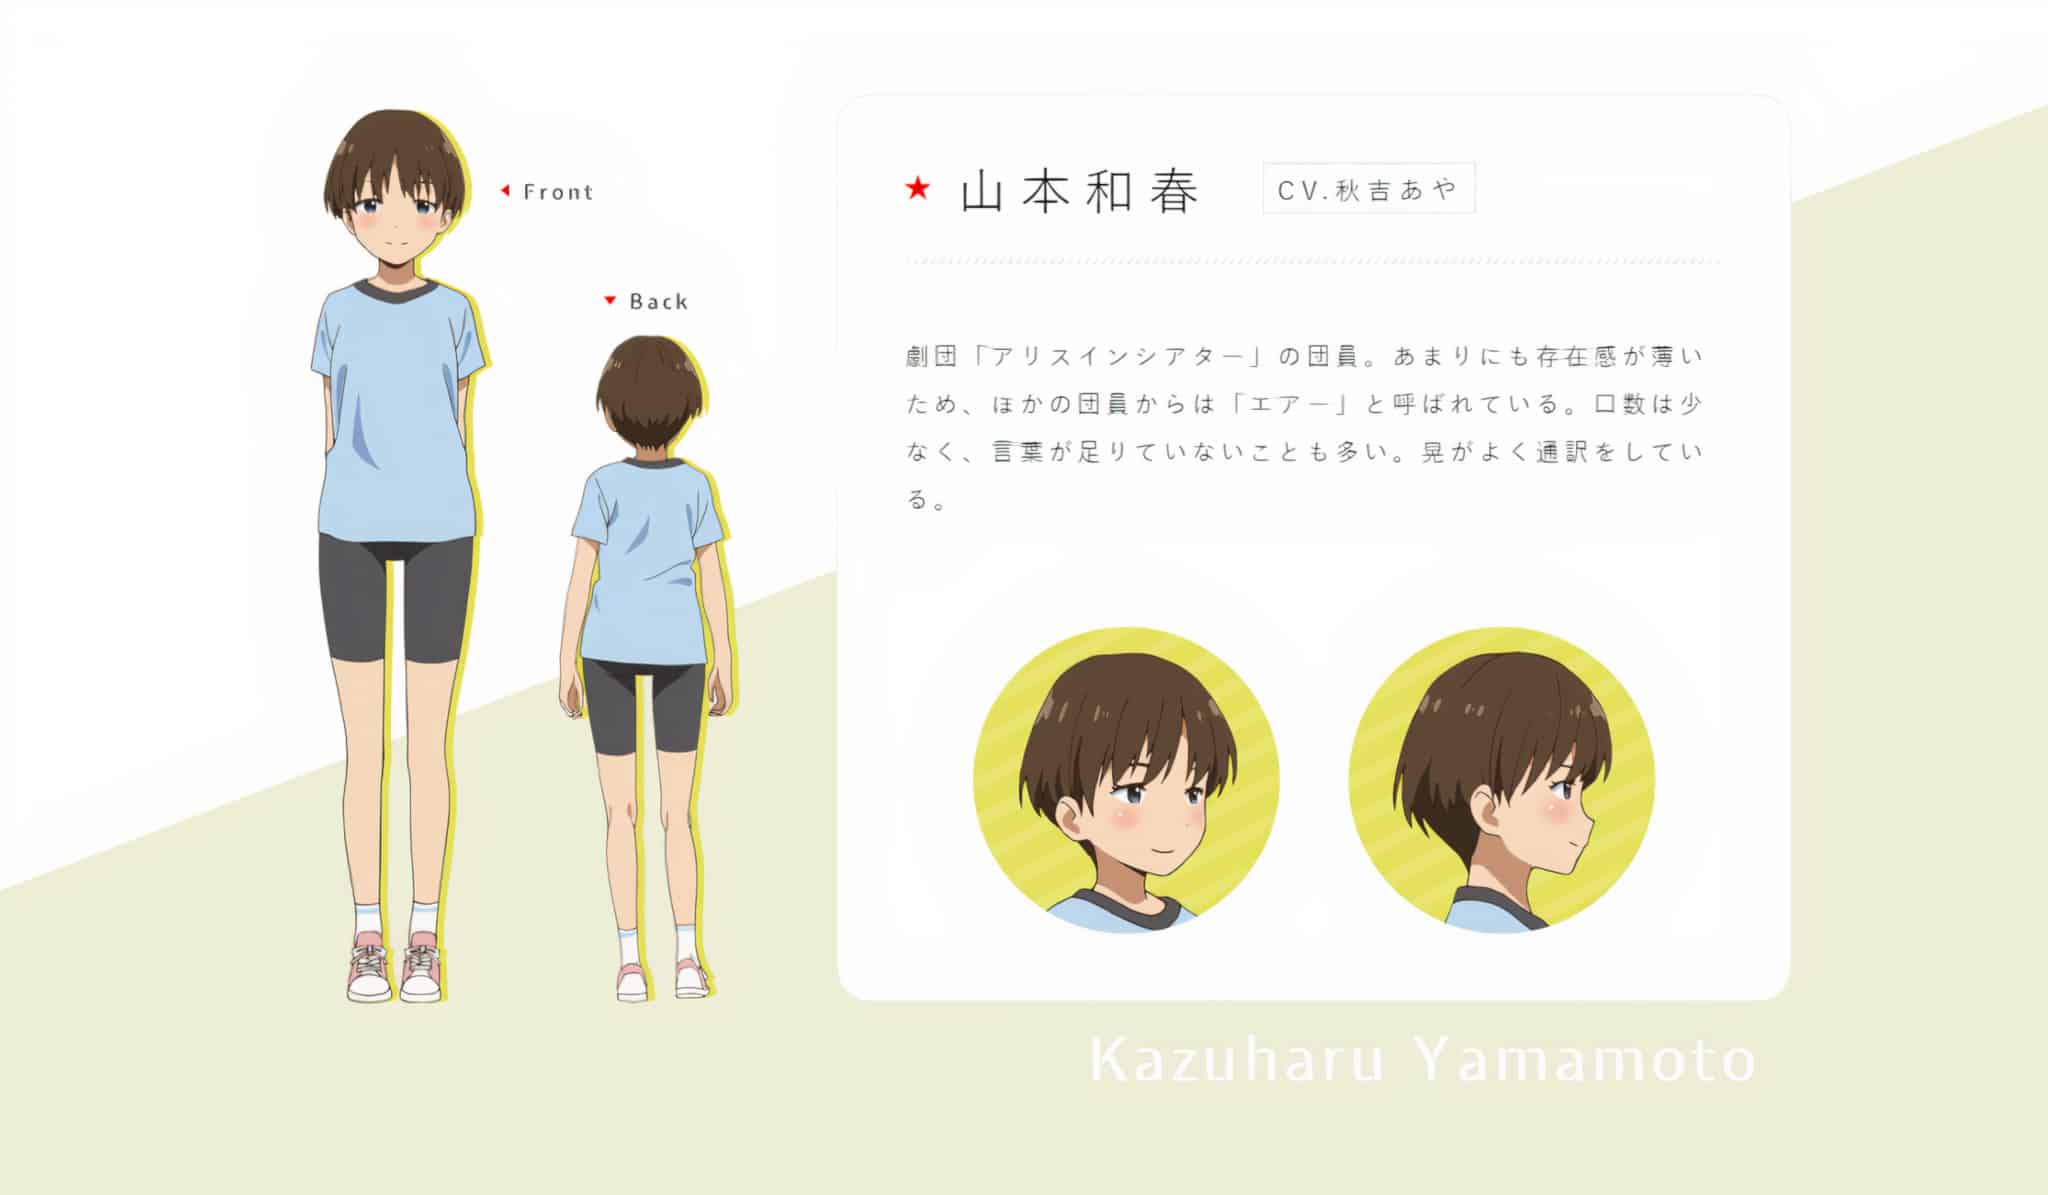 Design de Kazuharu Yamamoto dans anime Gekidol